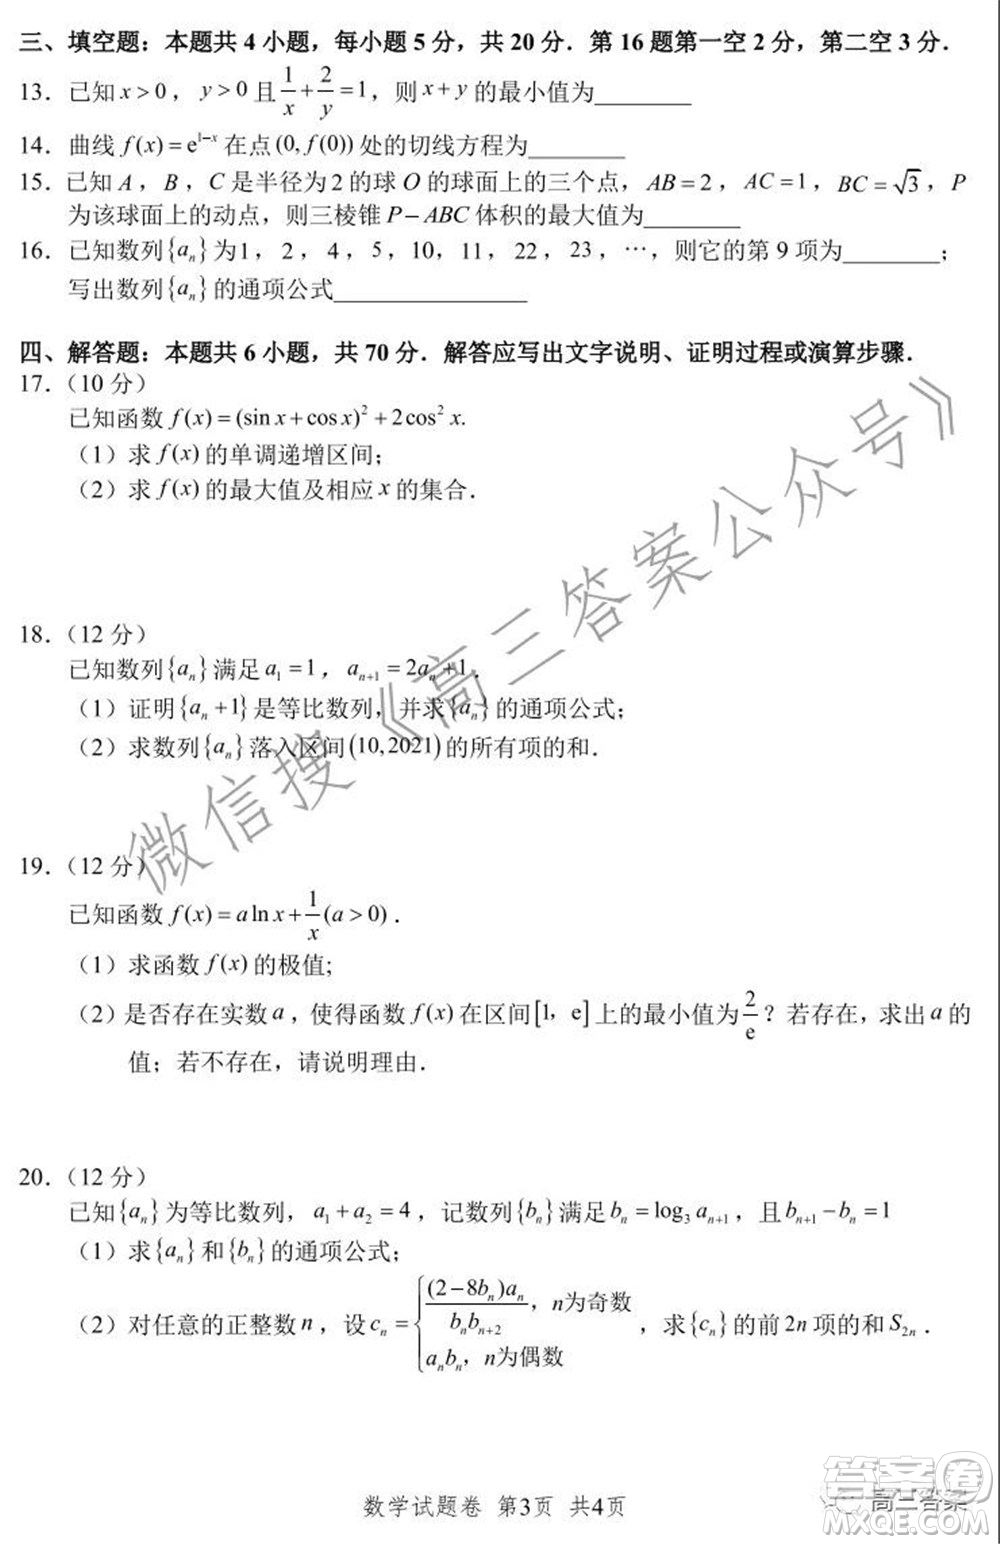 湖湘教育三新探索协作体2021年11月期中联考试卷高三数学试题及答案